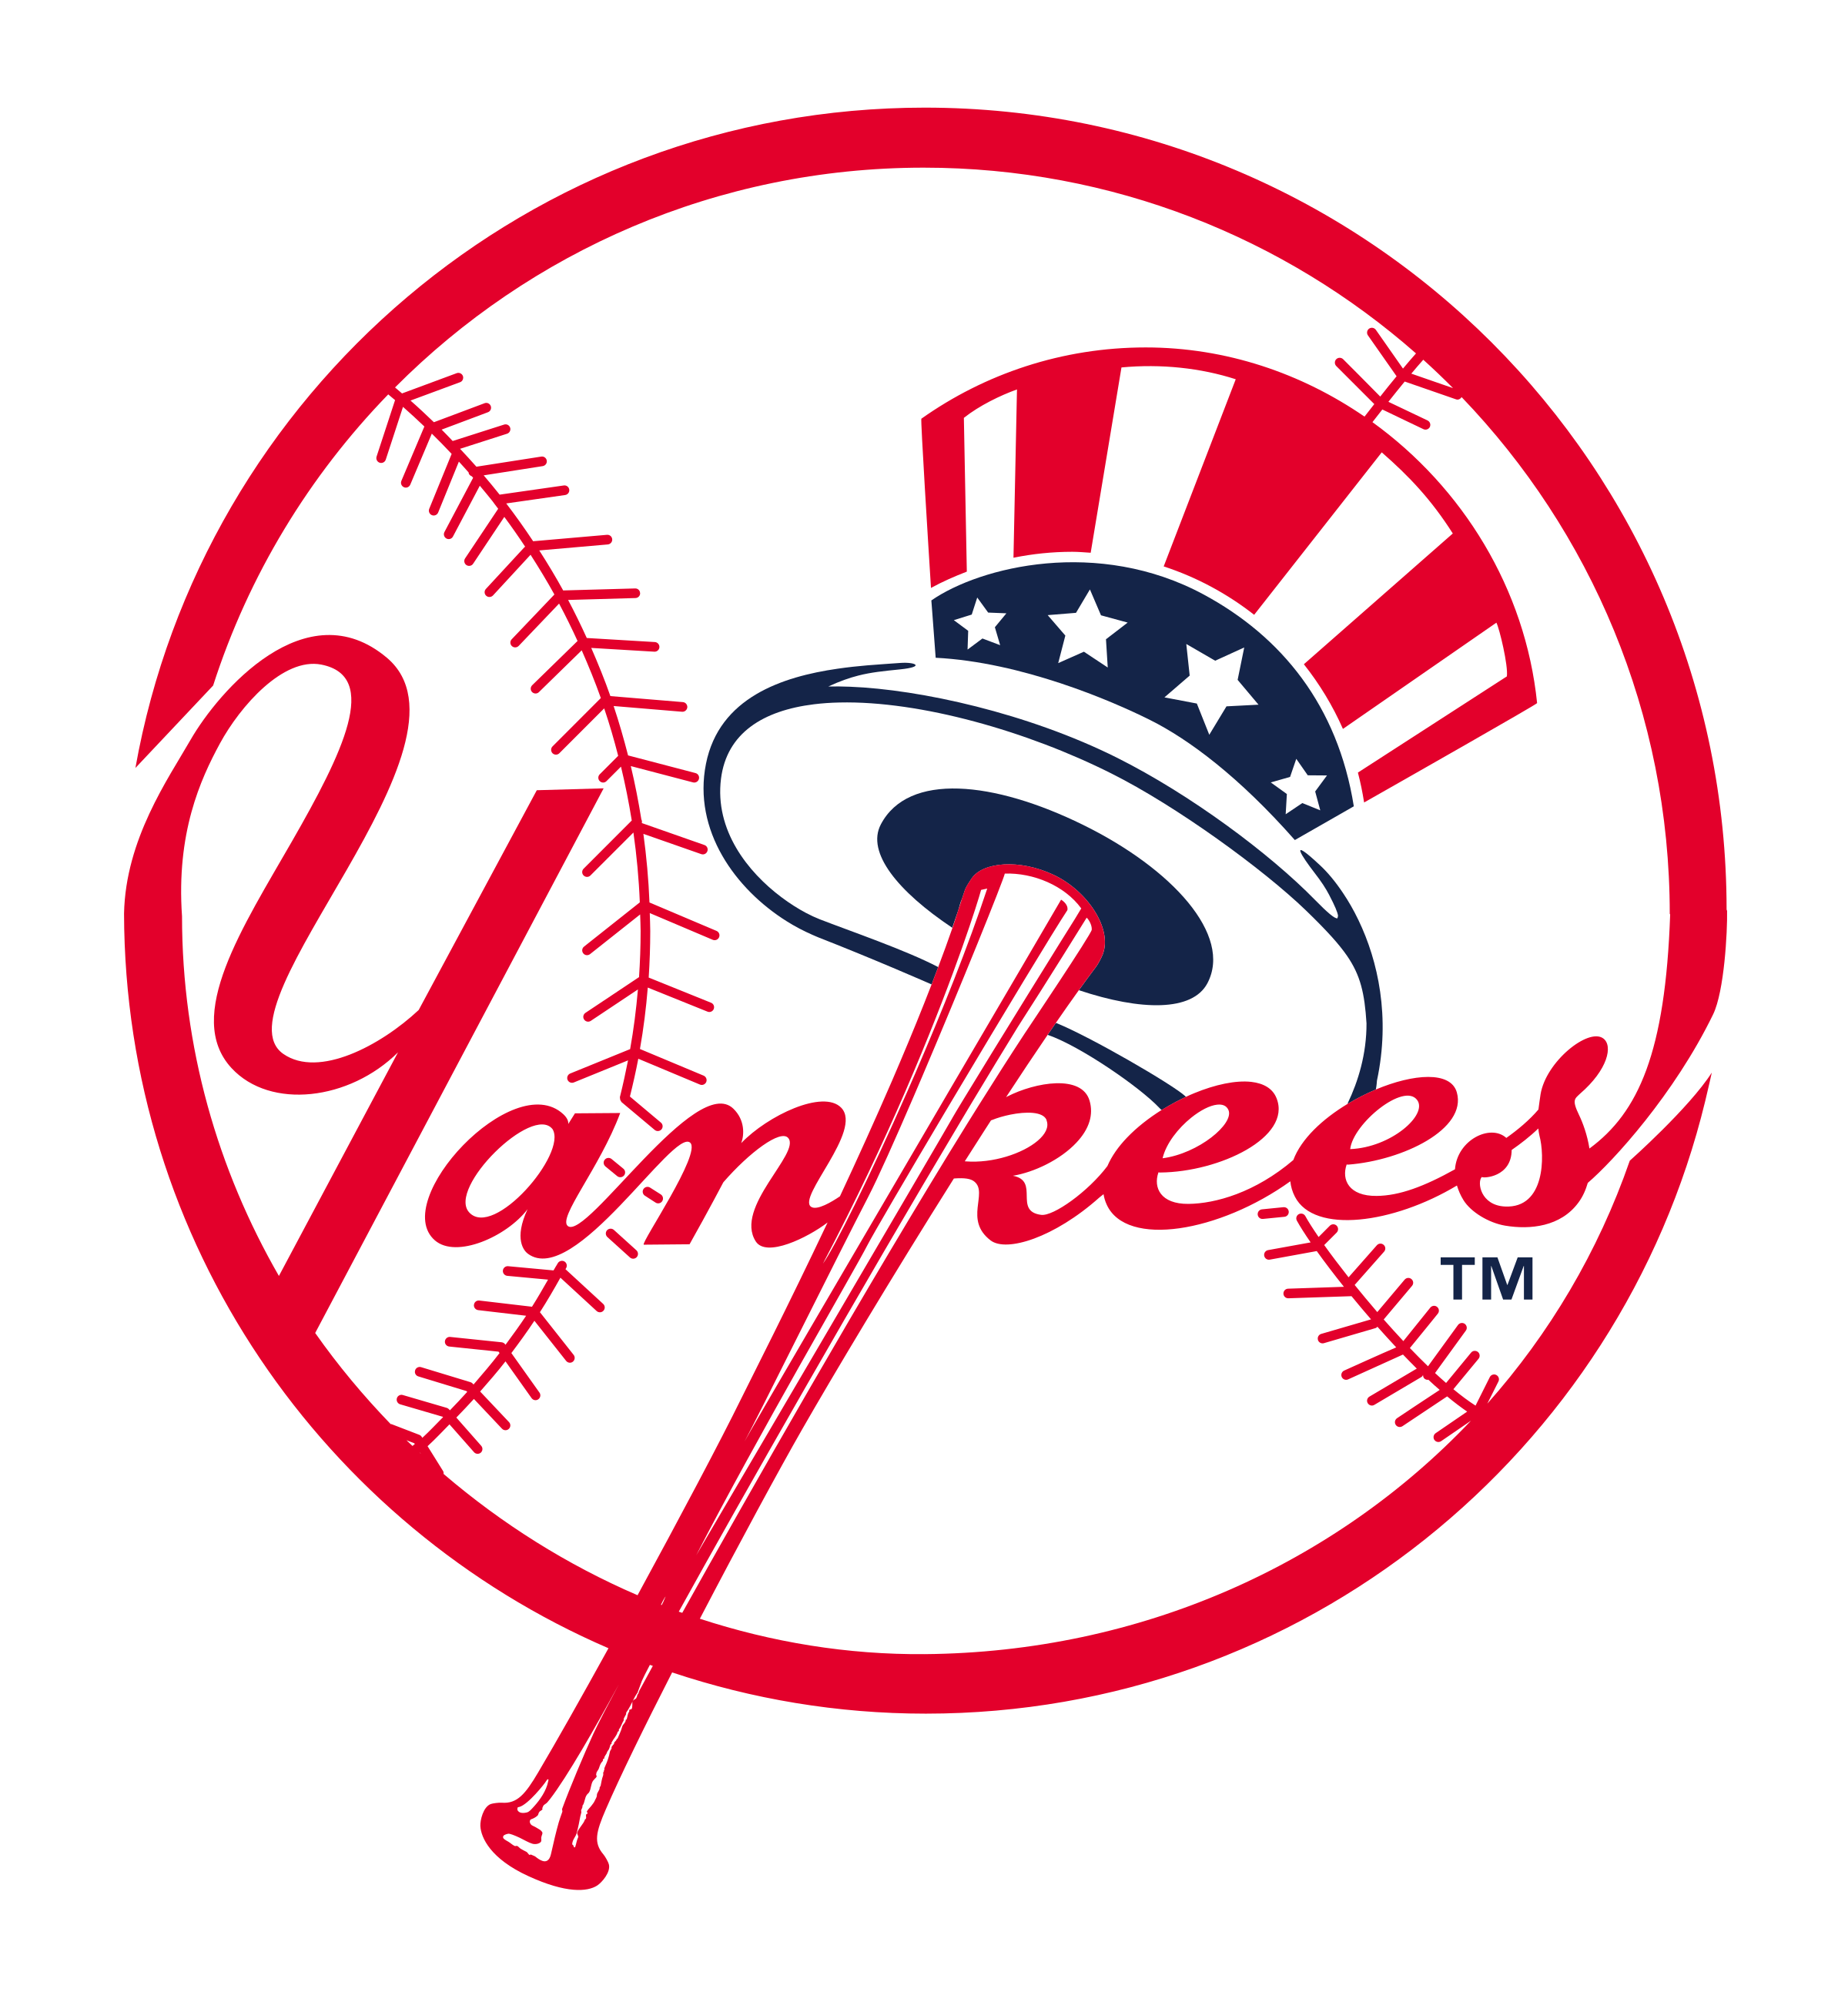 Yankees' logo